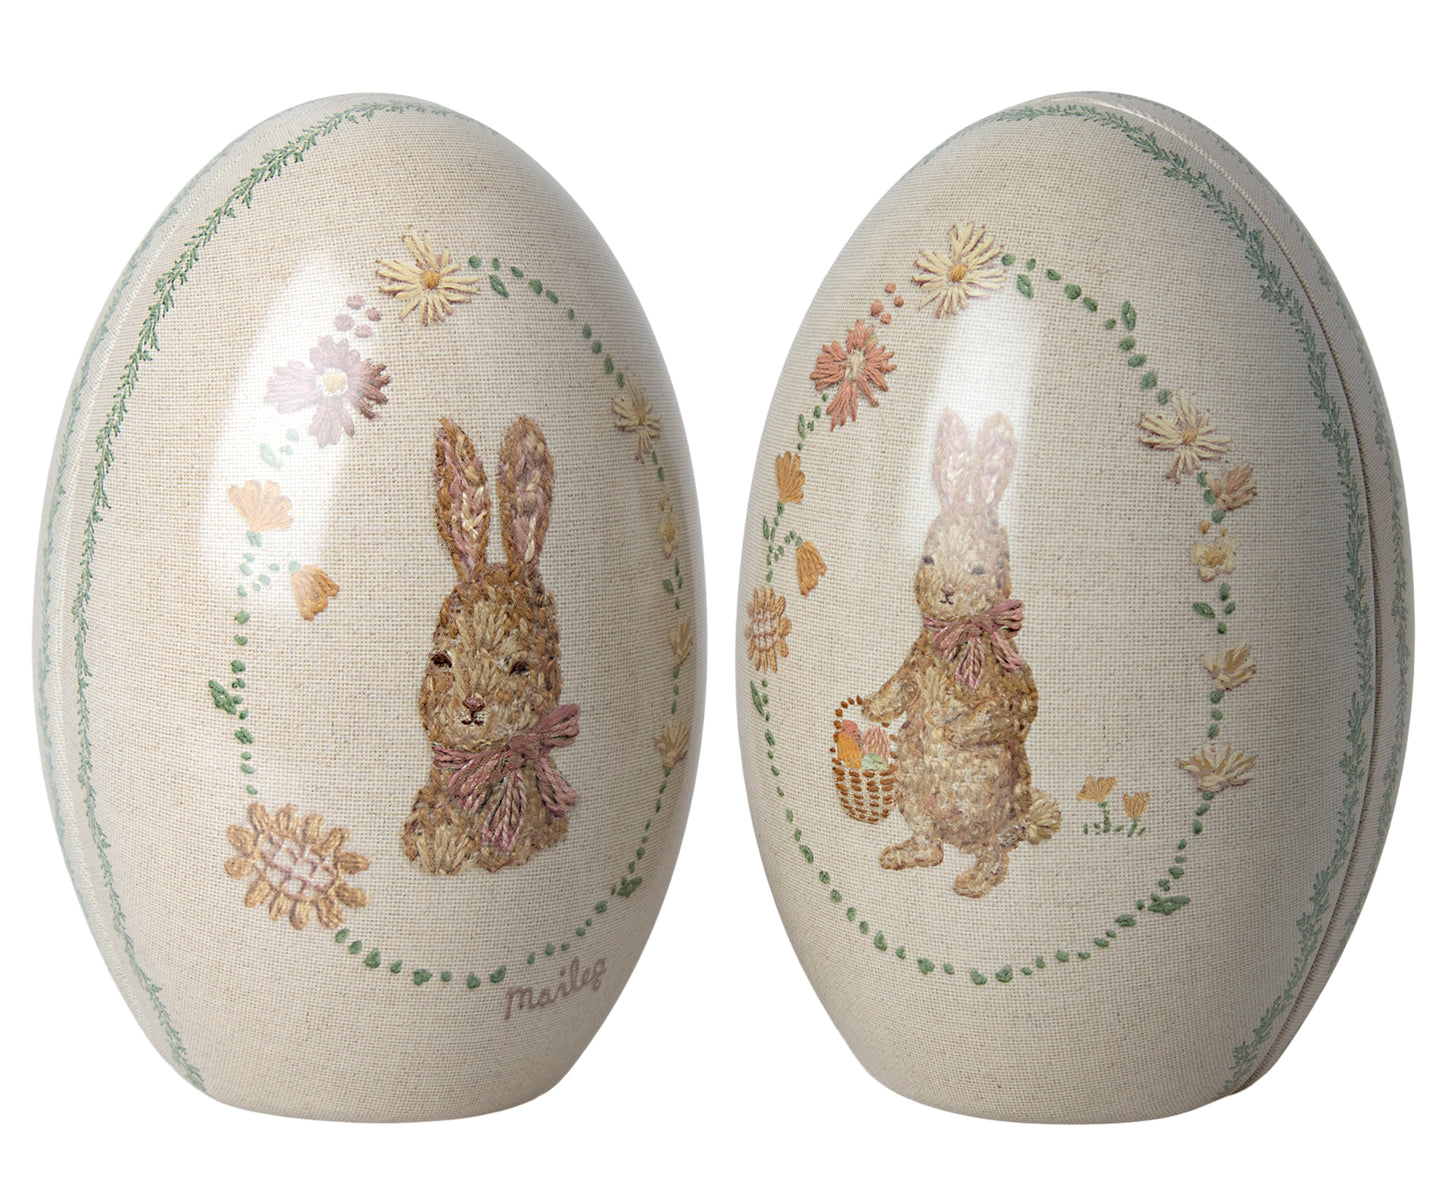 Easter Egg, Chicken & Egg Bundle - Worth £79